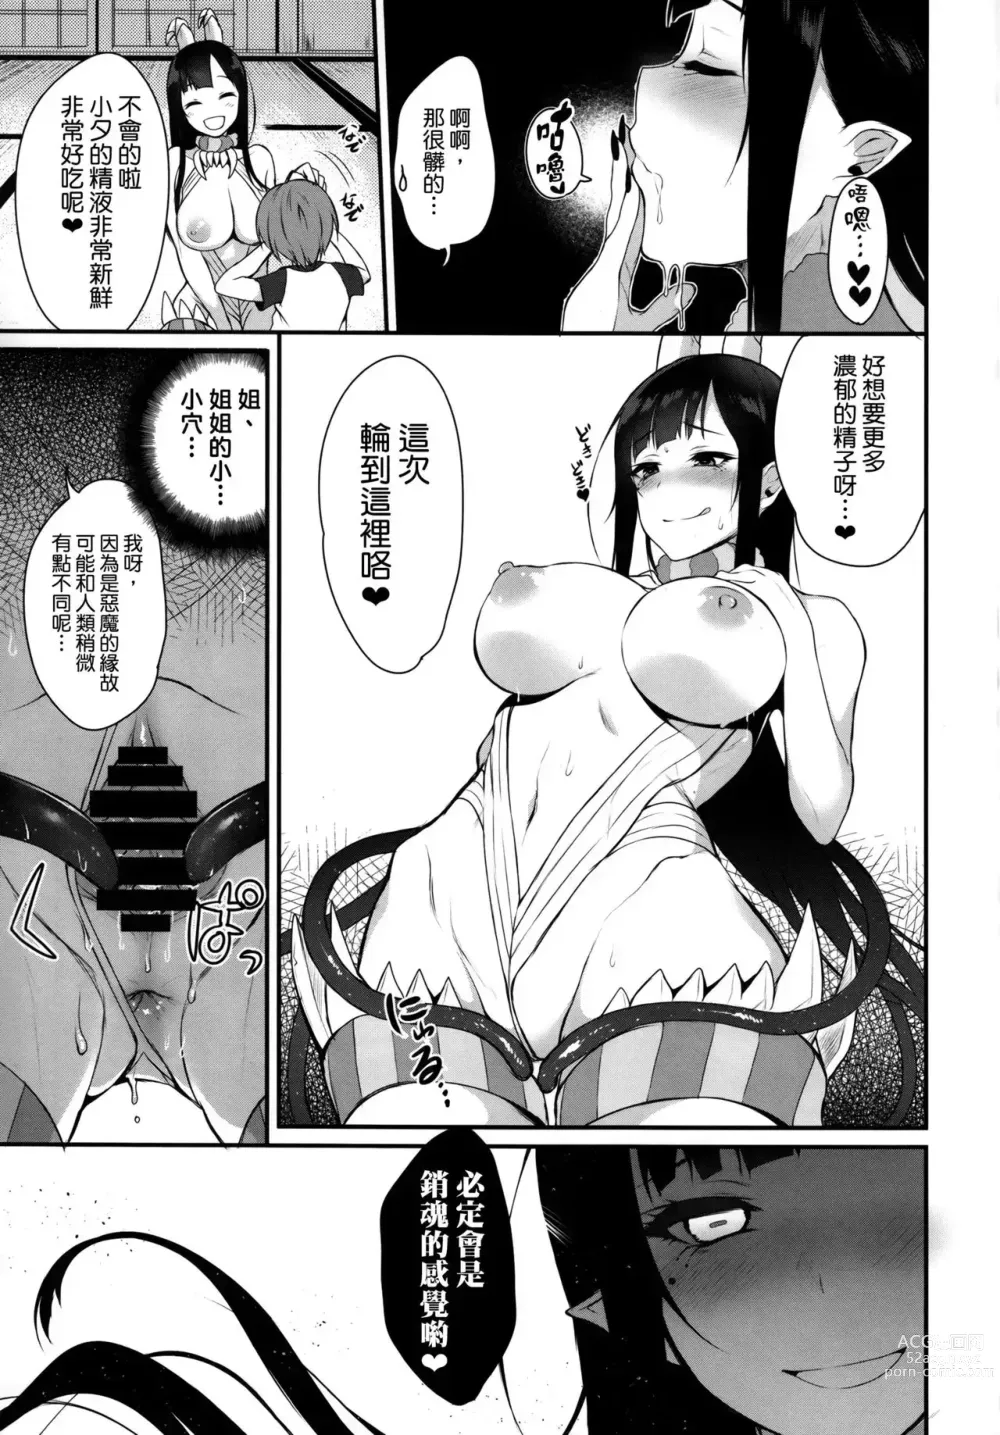 Page 18 of doujinshi Ane Naru Mono compilation